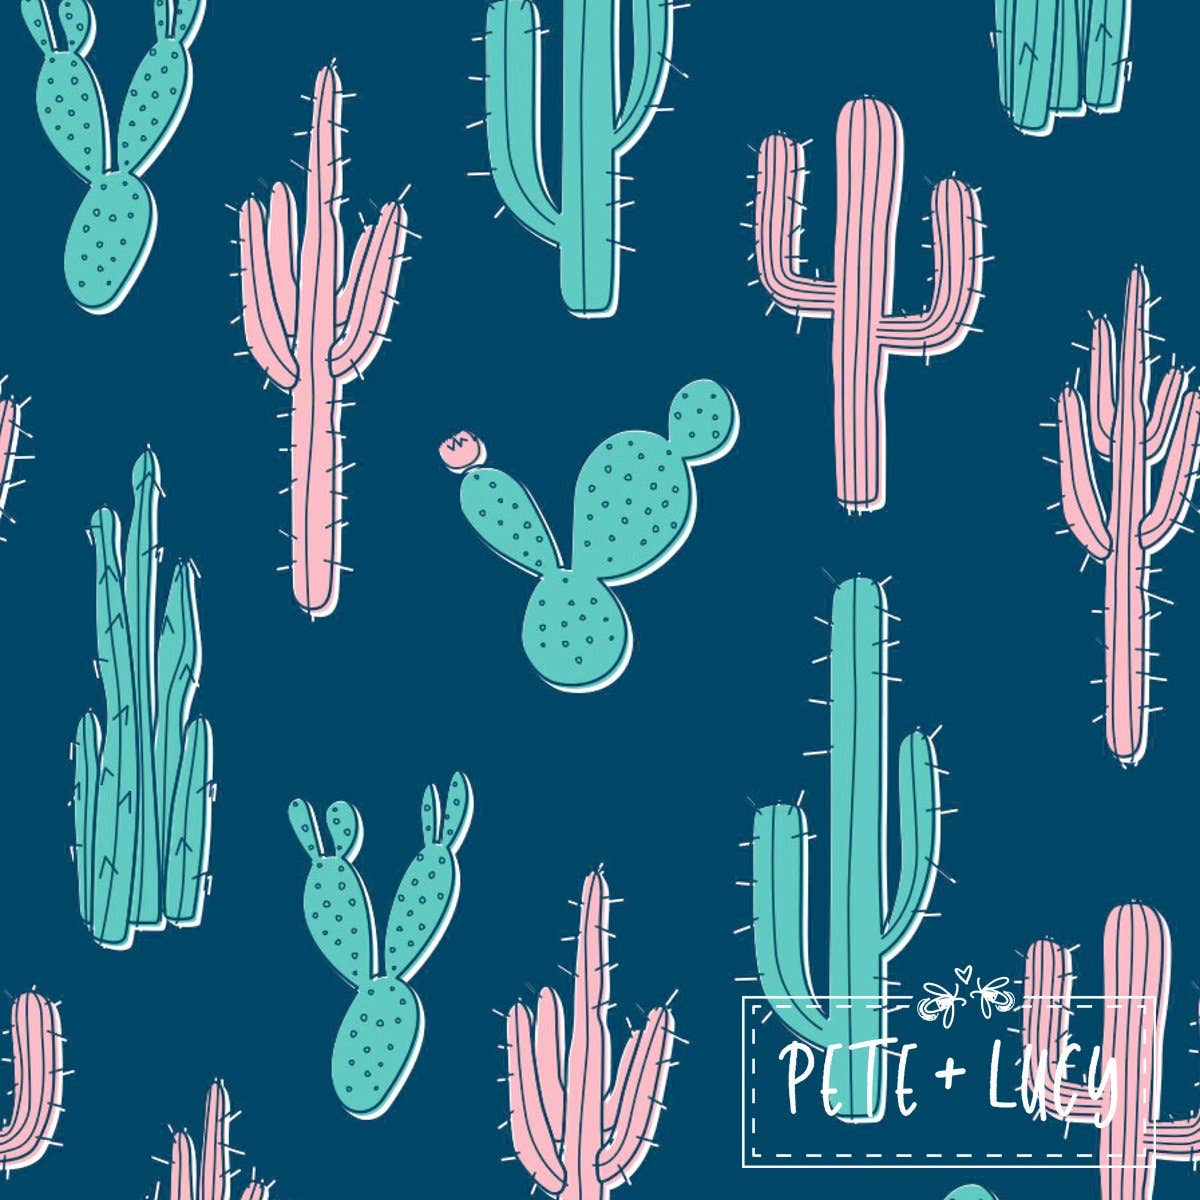 PETE + LUCY Blue Boho Cactus 2 Piece Set Pants Babydoll Top